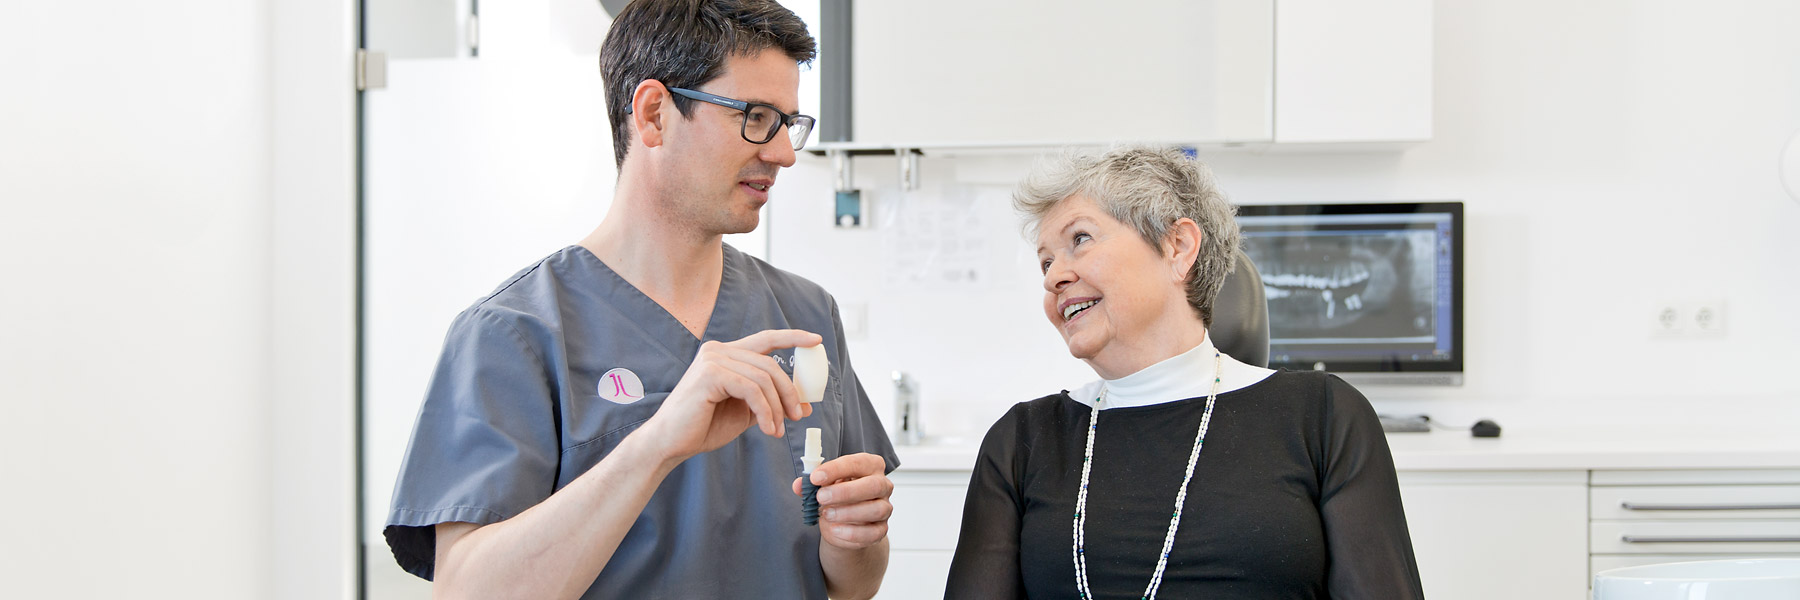 Zahnarzt Regensburg Dr. Lehner zeigt einer Patientin ein Zahnmodell